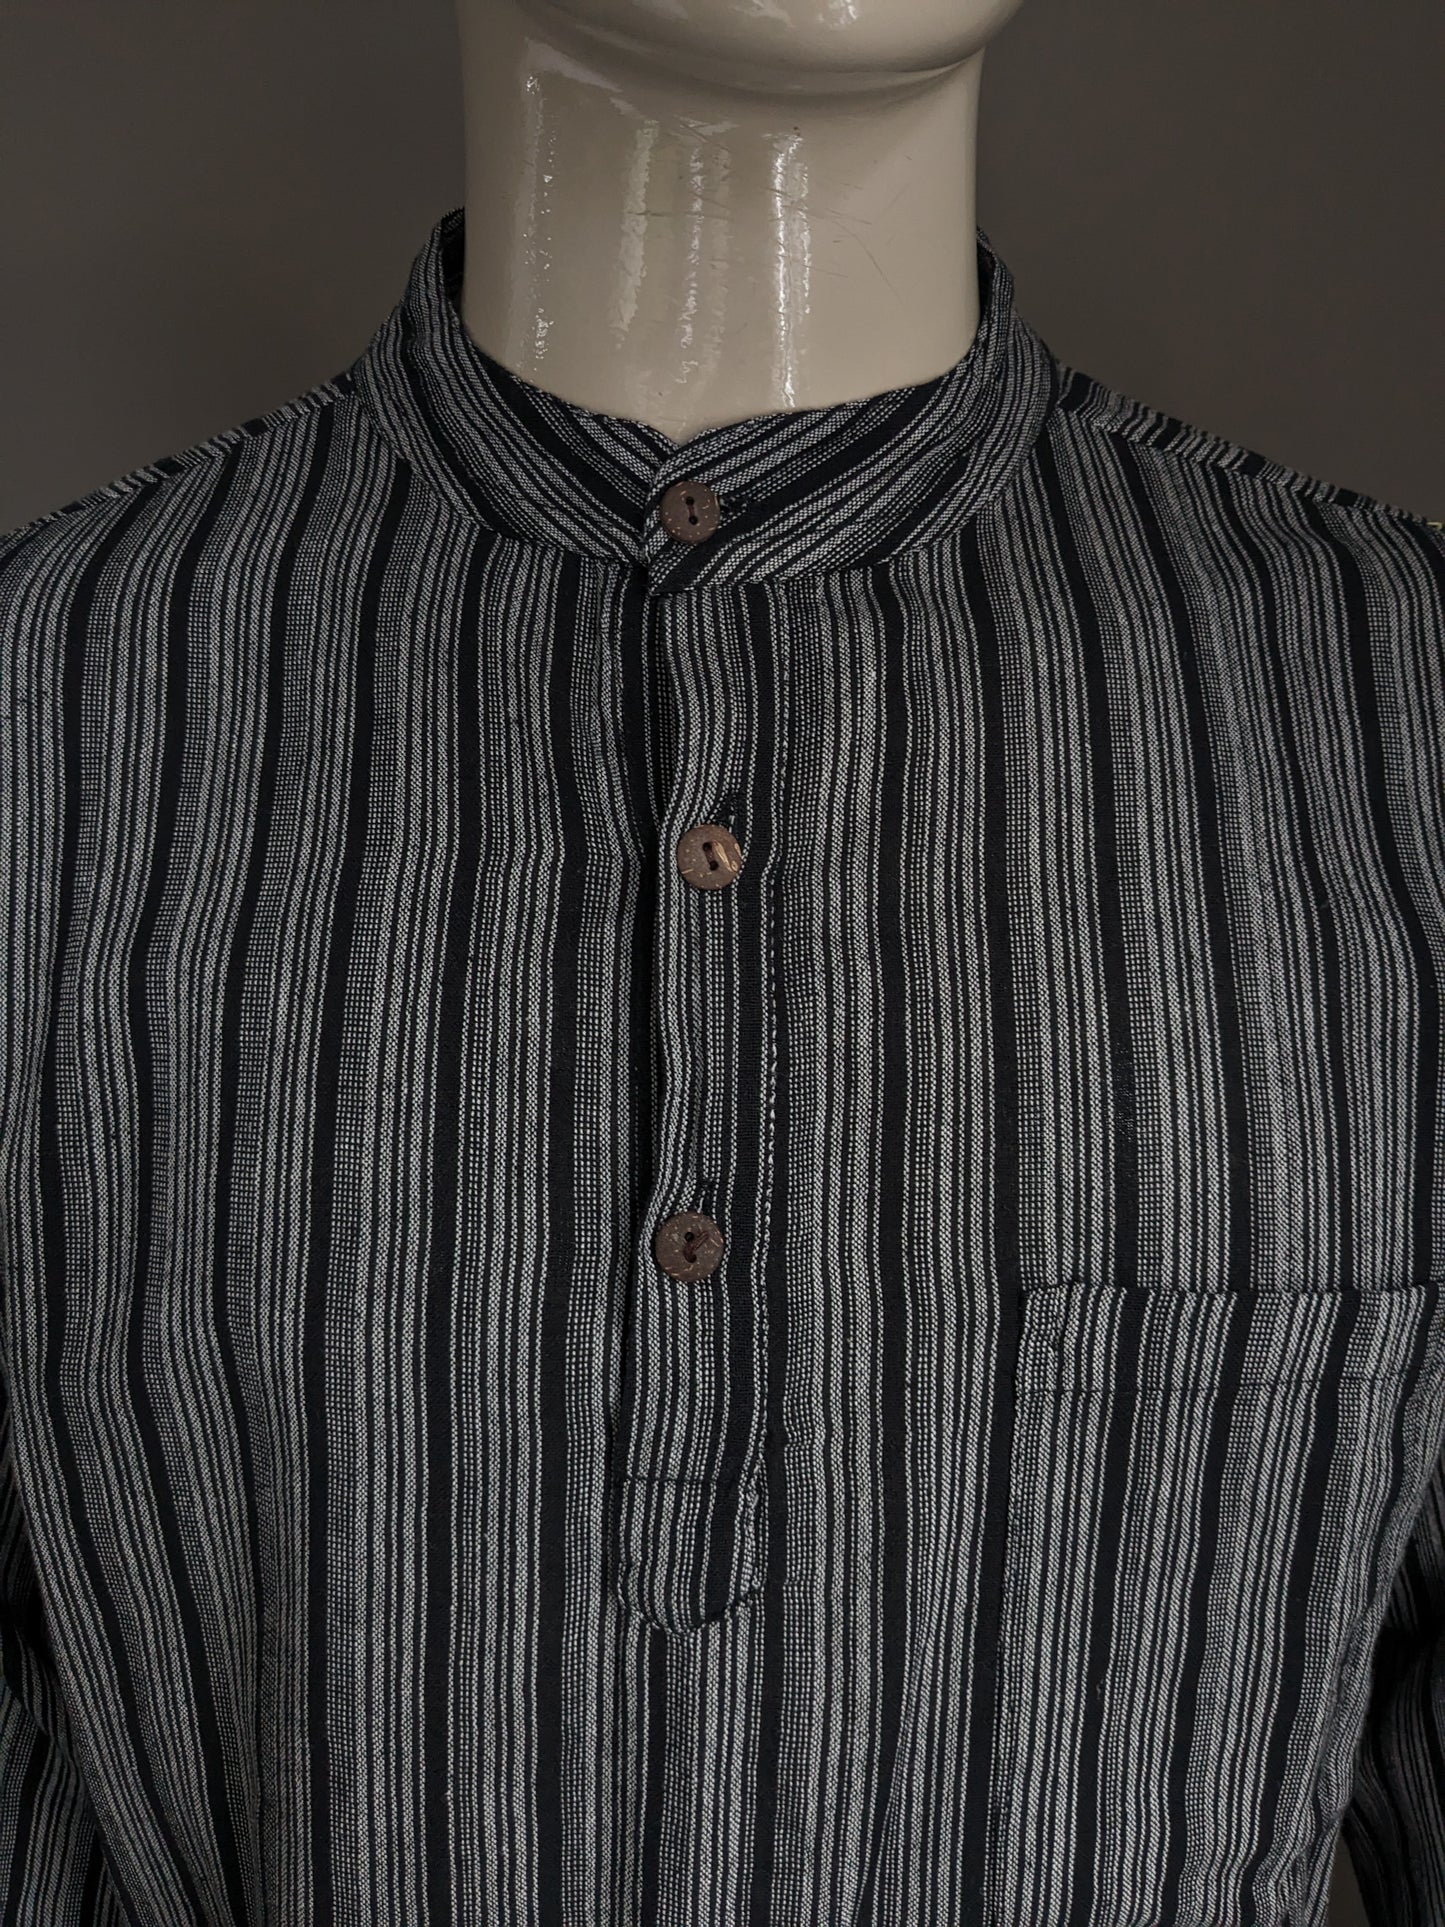 Magion / camicia Yuli Polo Vintage con alzato / Farmers / Collar MAO. Strisce grigio nero con borsa. Taglia XL.